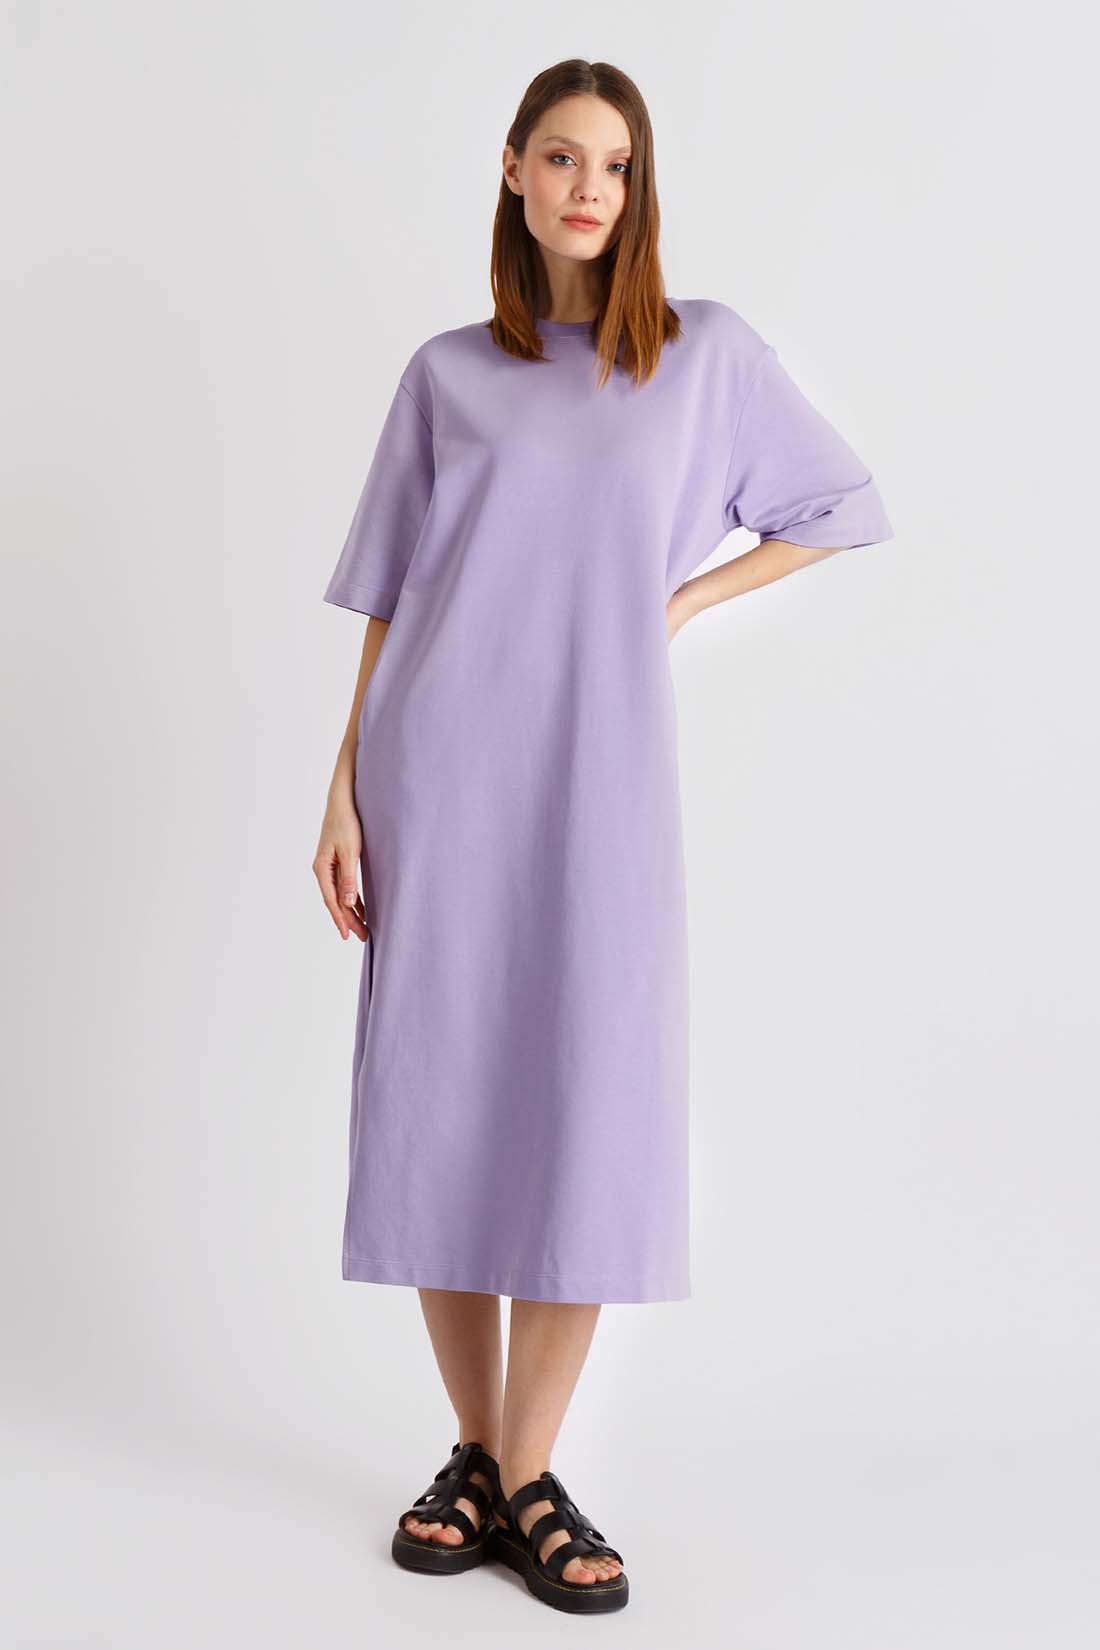 Платье (арт. baon B4522028), размер M, цвет фиолетовый Платье (арт. baon B4522028) - фото 1